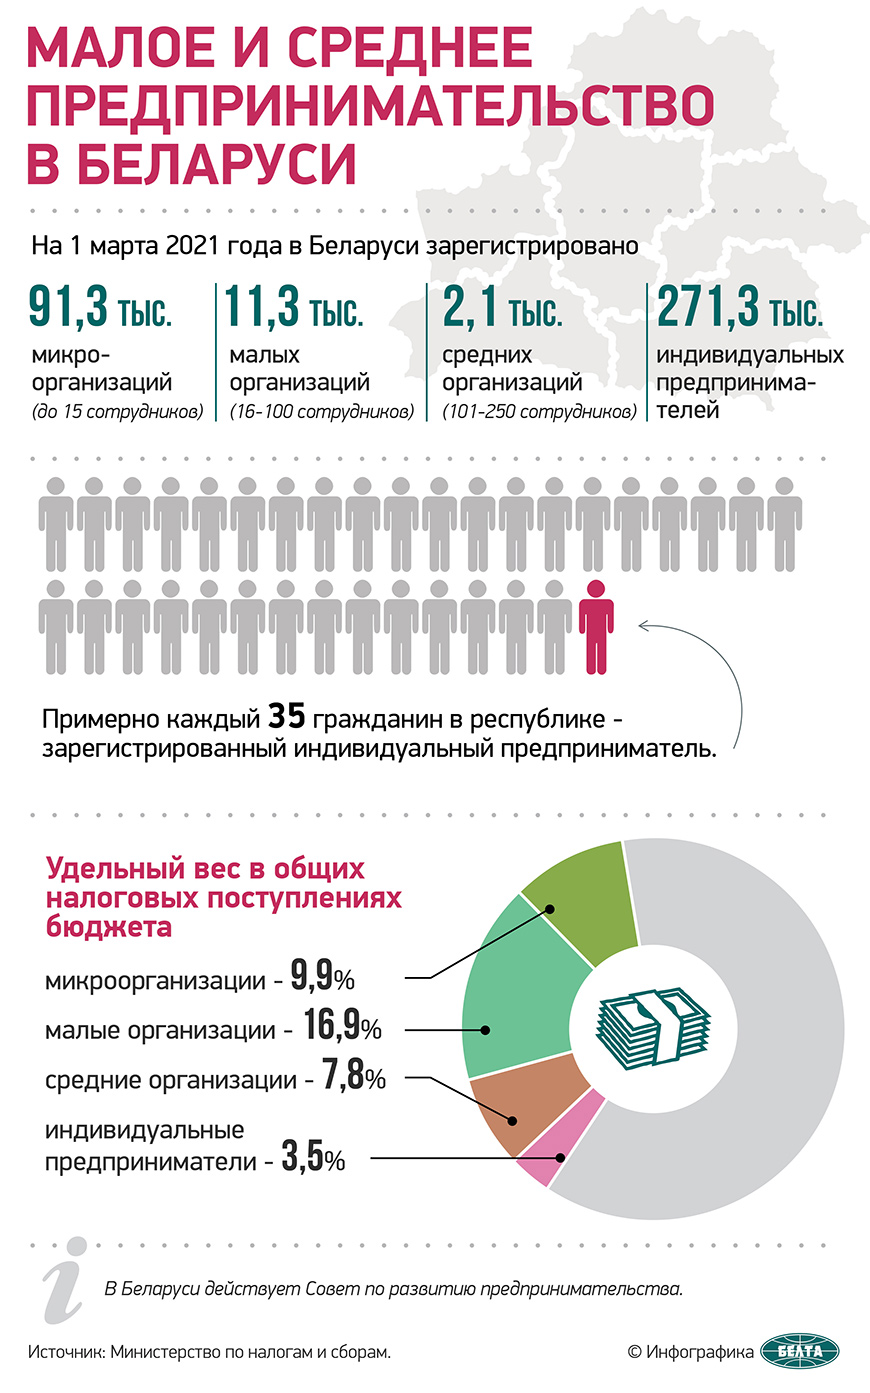 Малое и среднее предпринимательство в Беларуси